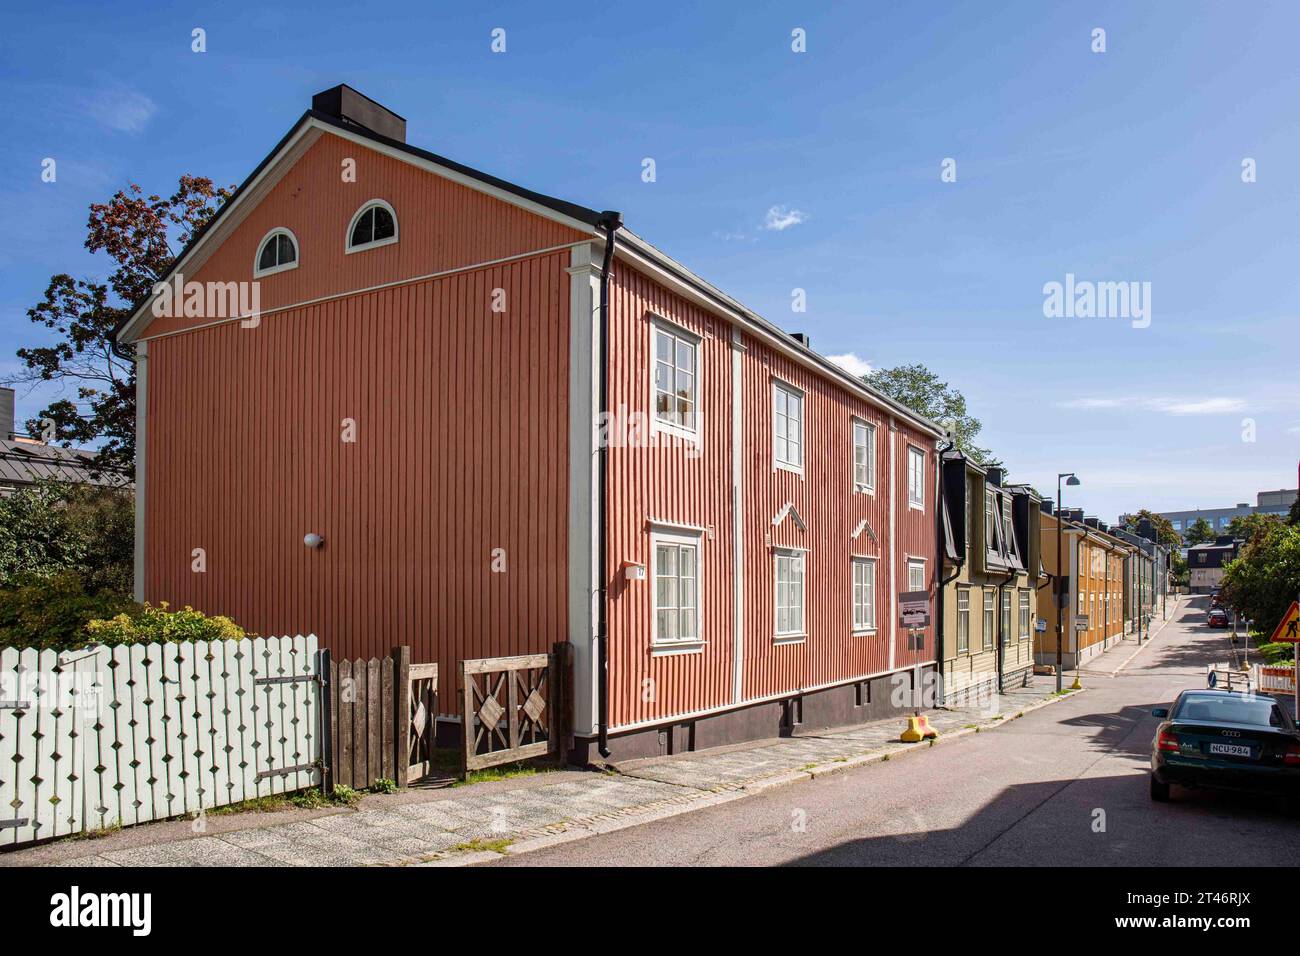 Vue sur la rue Keuruuntie avec de vieux bâtiments résidentiels en bois dans le quartier Puu-Vallila d'Helsinki, Finlande Banque D'Images